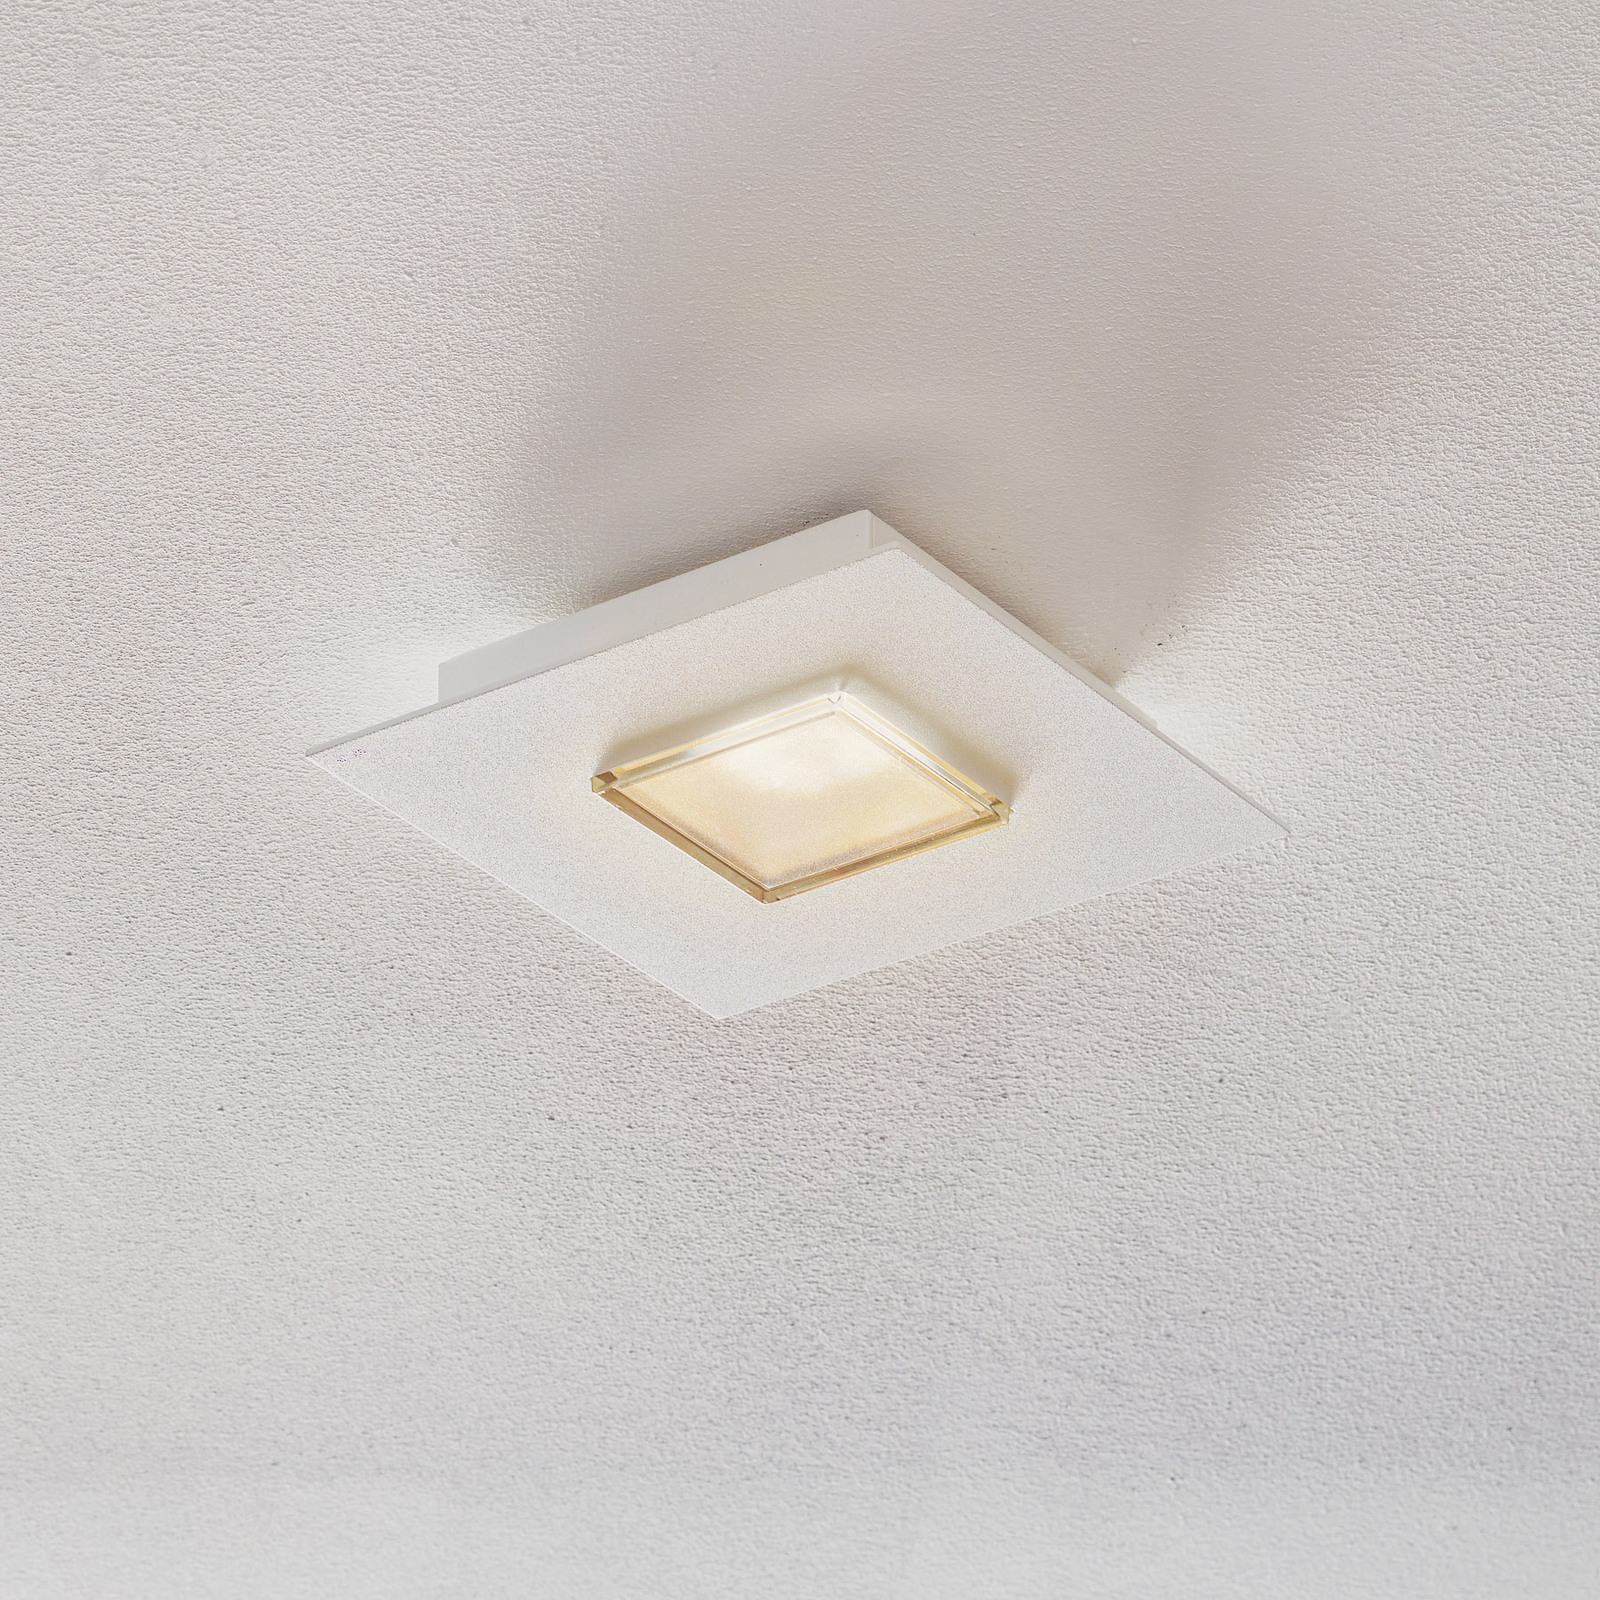 Fabbian Quarter - čtvercové LED stropní svítidlo